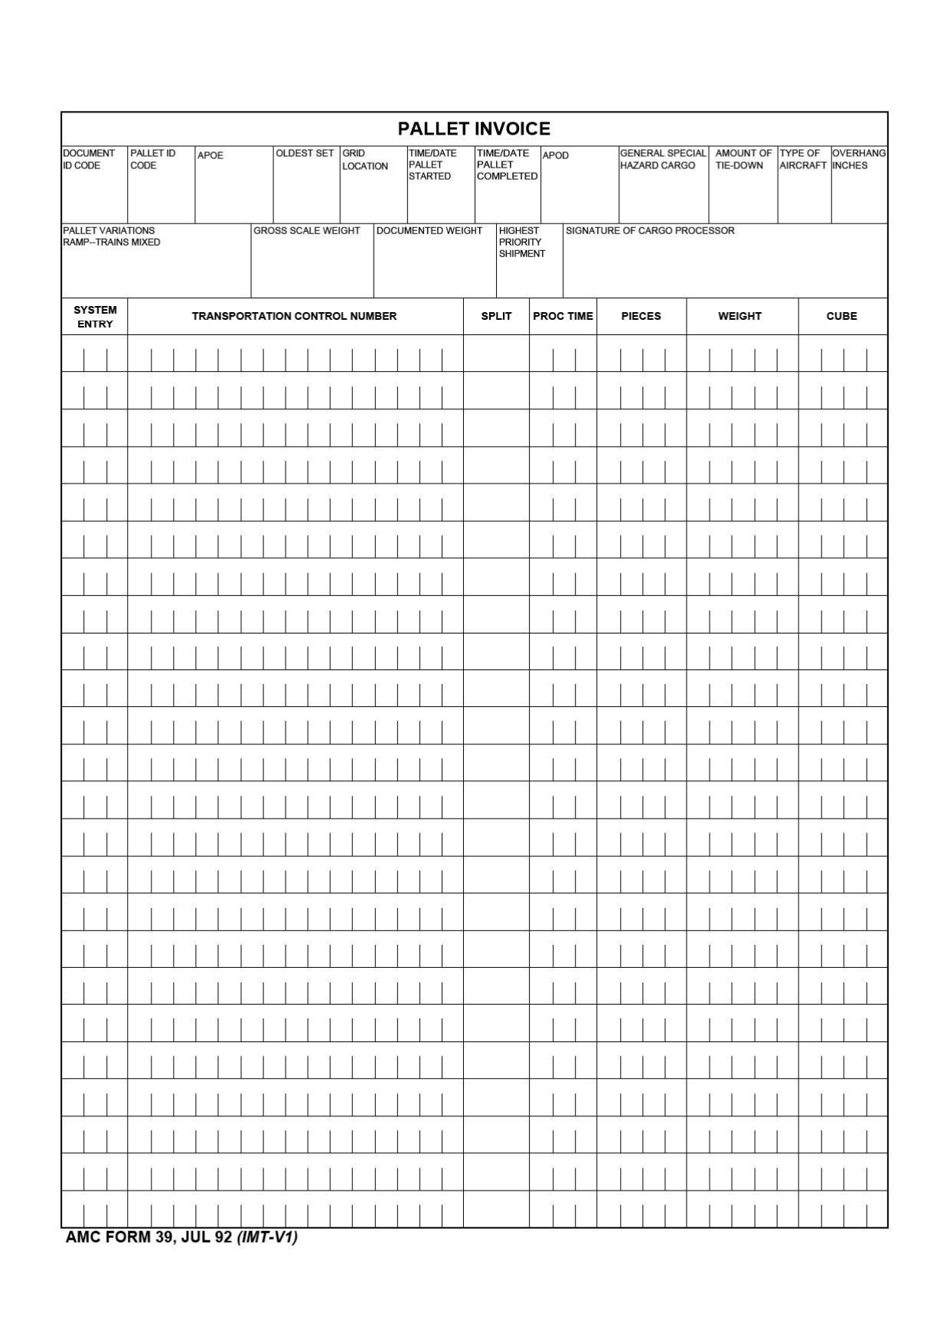 AMC Form 39 Pallet Invoice, Page 1